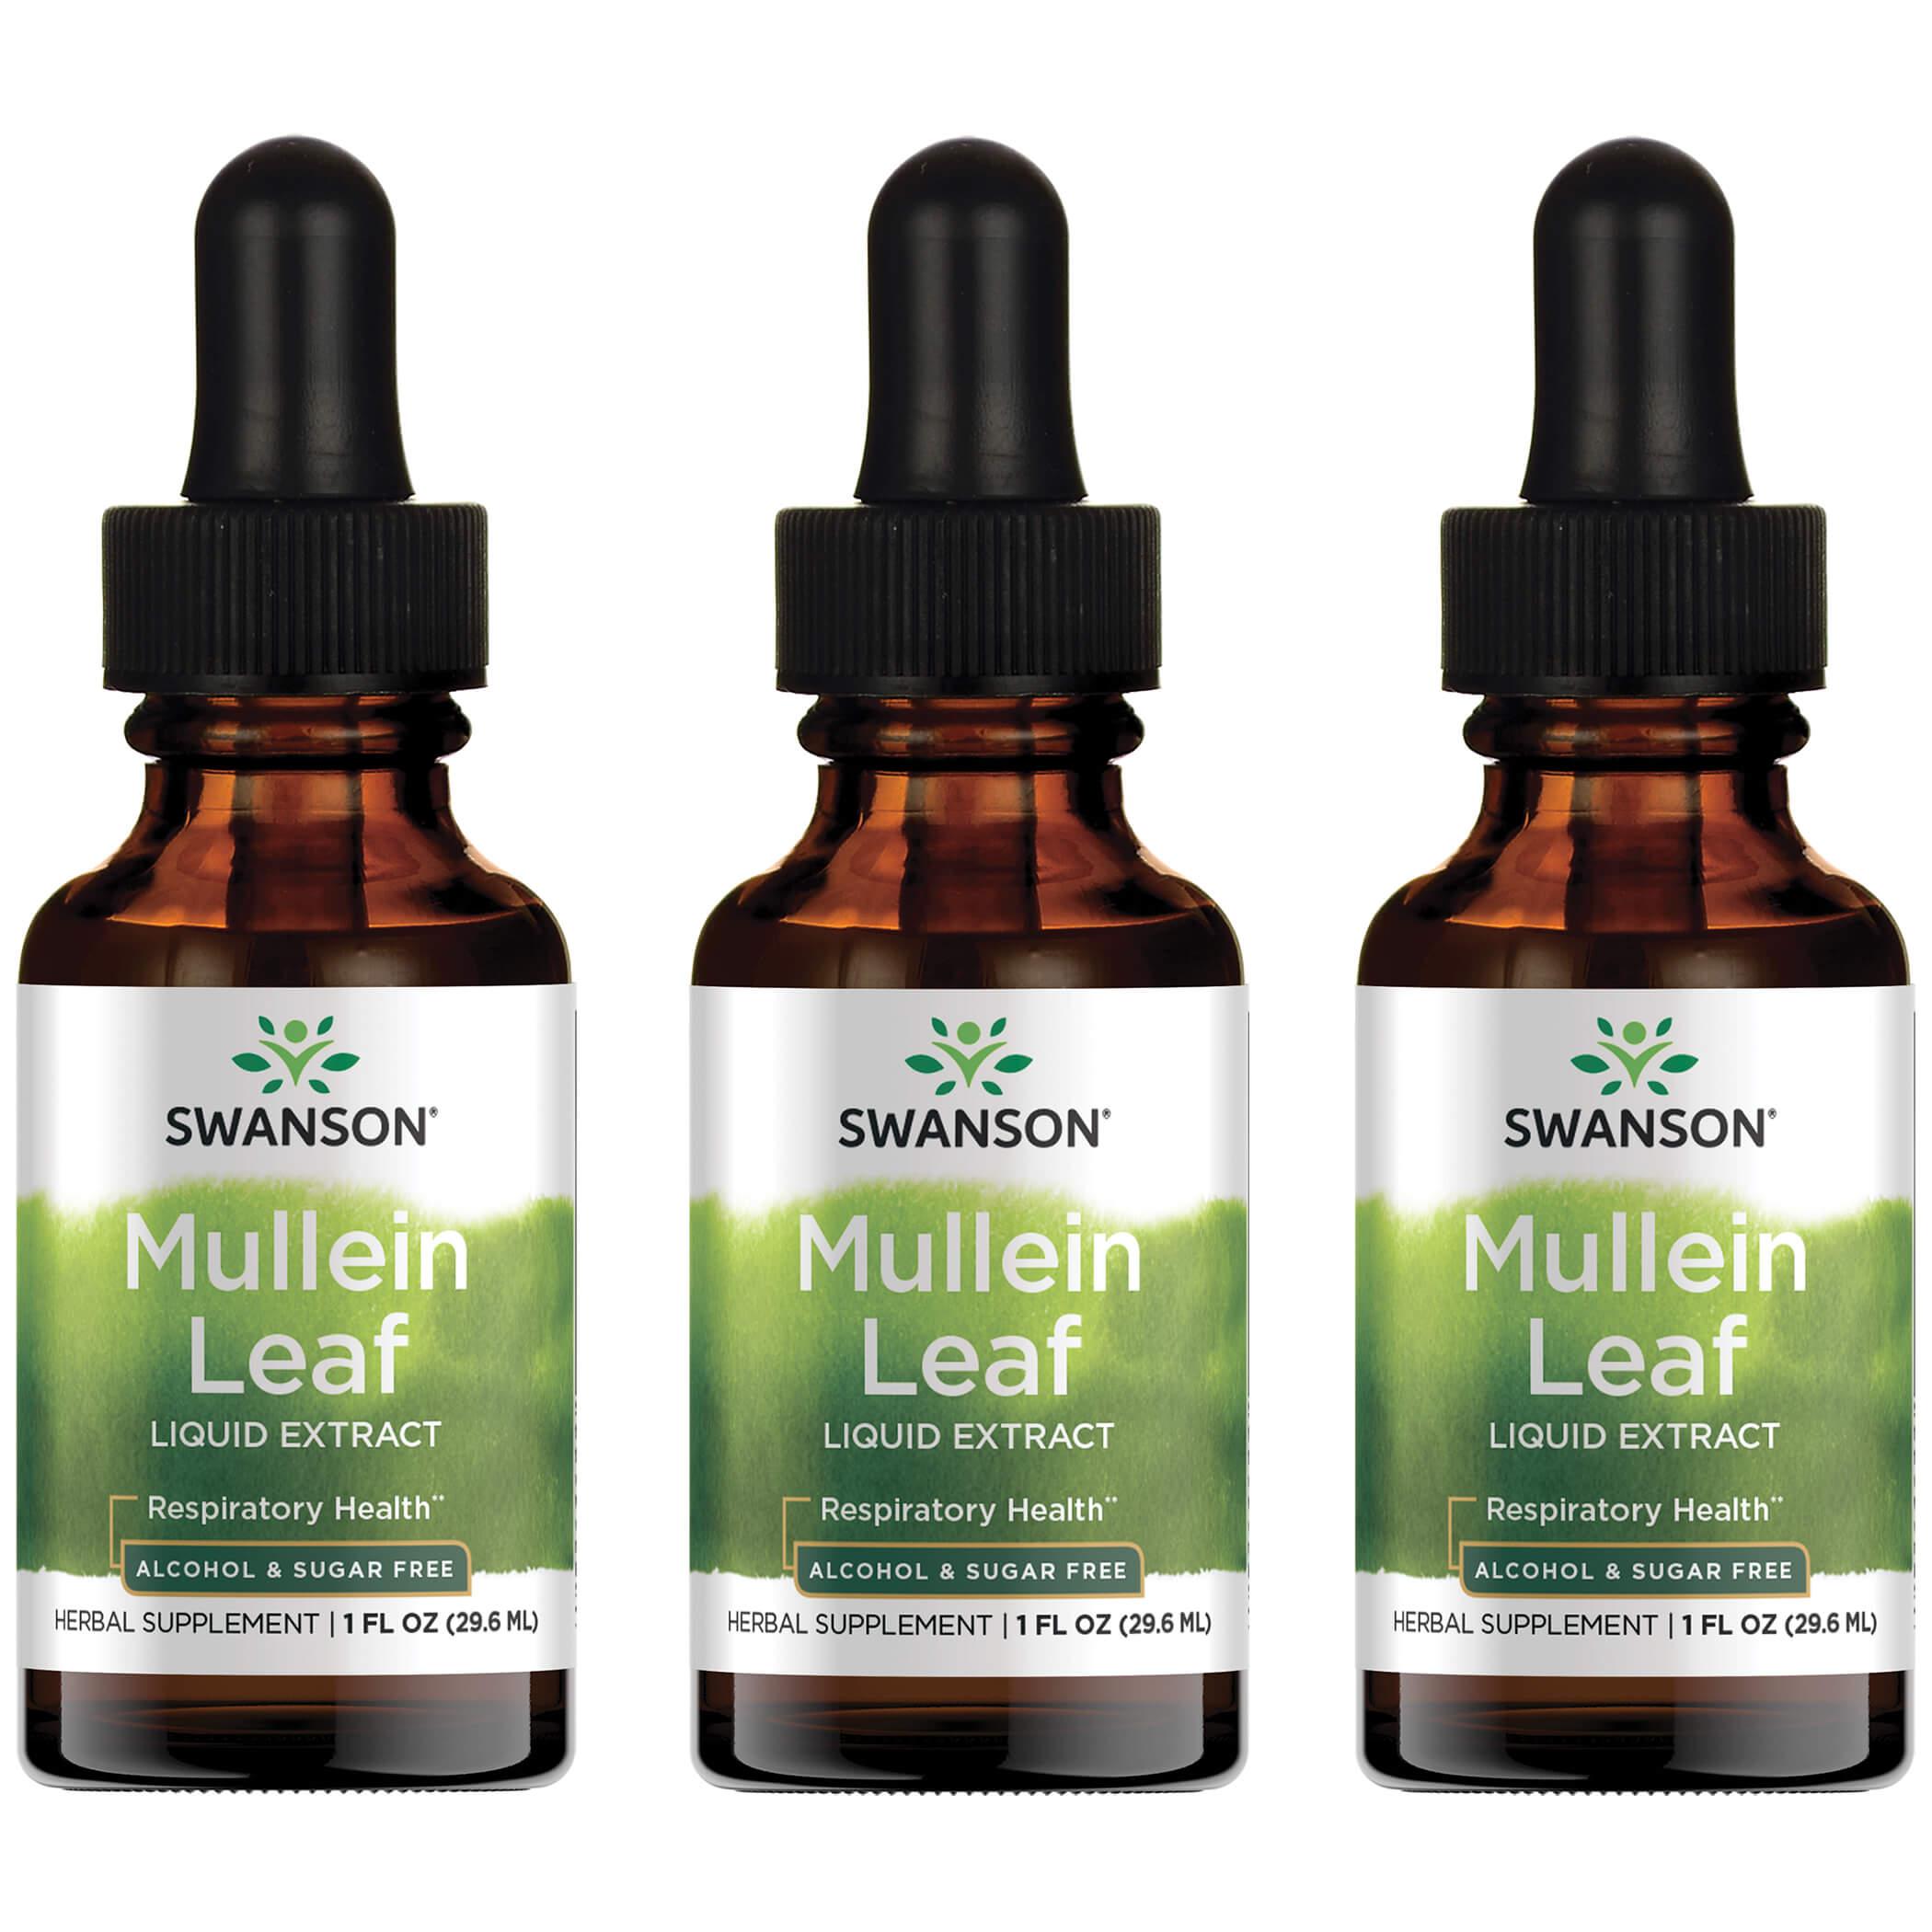 Swanson Premium Mullein Leaf Liquid Extract - Alcohol & Sugar Free 3 Pack Vitamin 1 G 1 fl oz Liquid